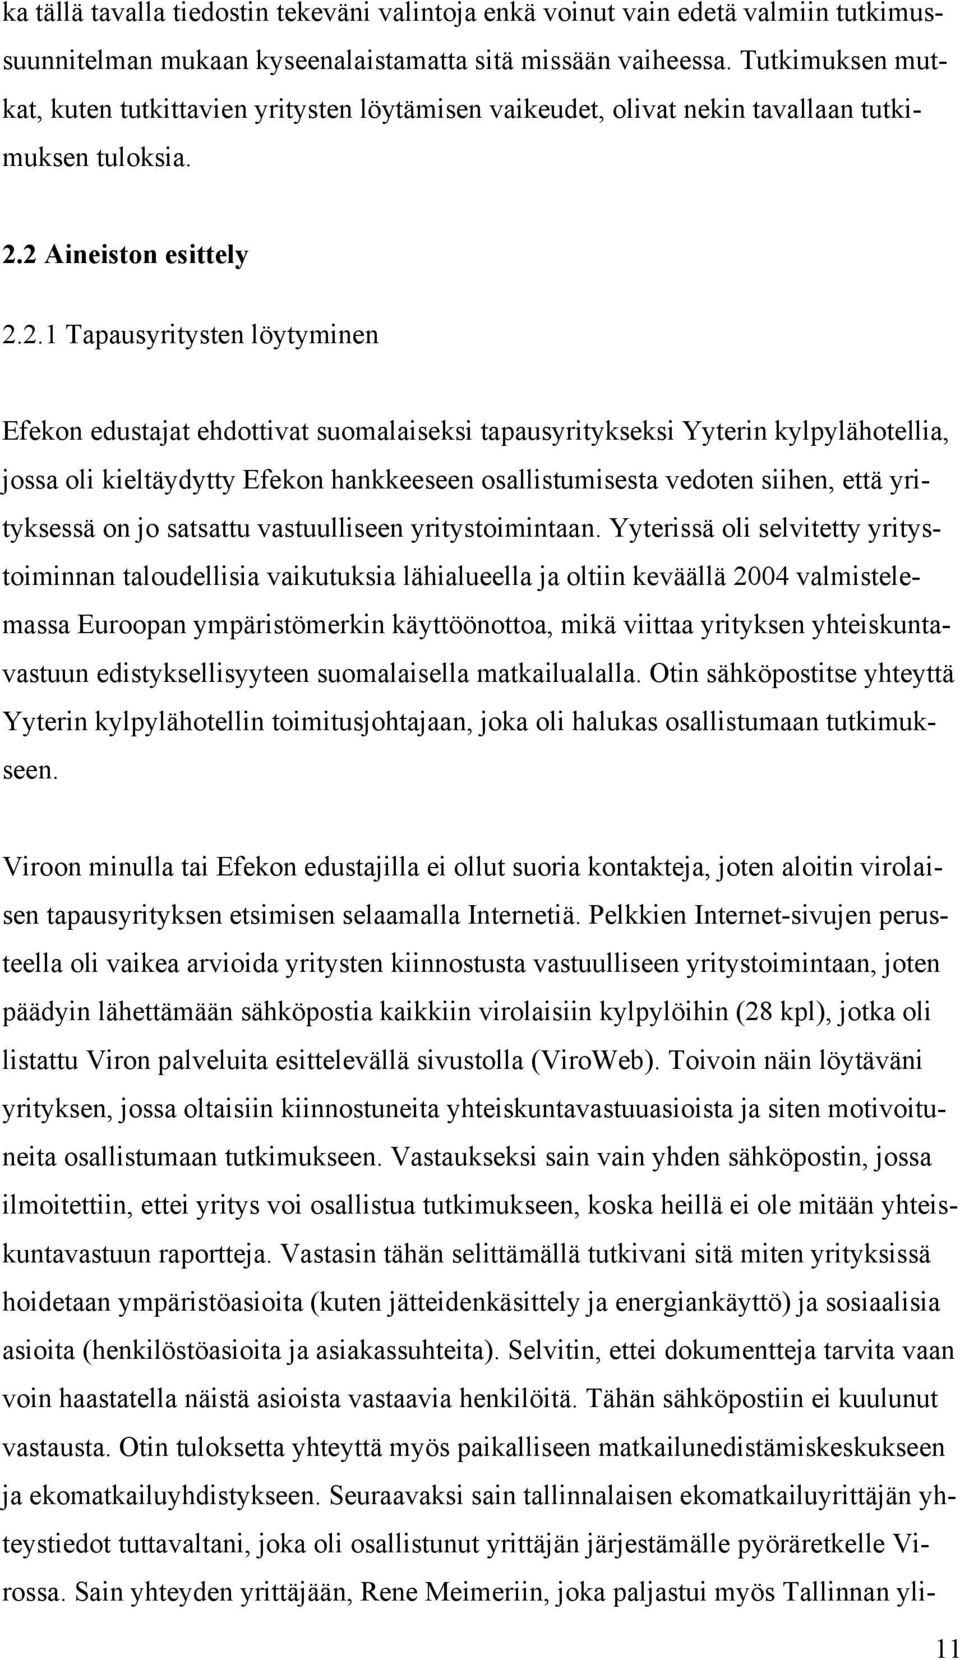 2 Aineiston esittely 2.2.1 Tapausyritysten löytyminen Efekon edustajat ehdottivat suomalaiseksi tapausyritykseksi Yyterin kylpylähotellia, jossa oli kieltäydytty Efekon hankkeeseen osallistumisesta